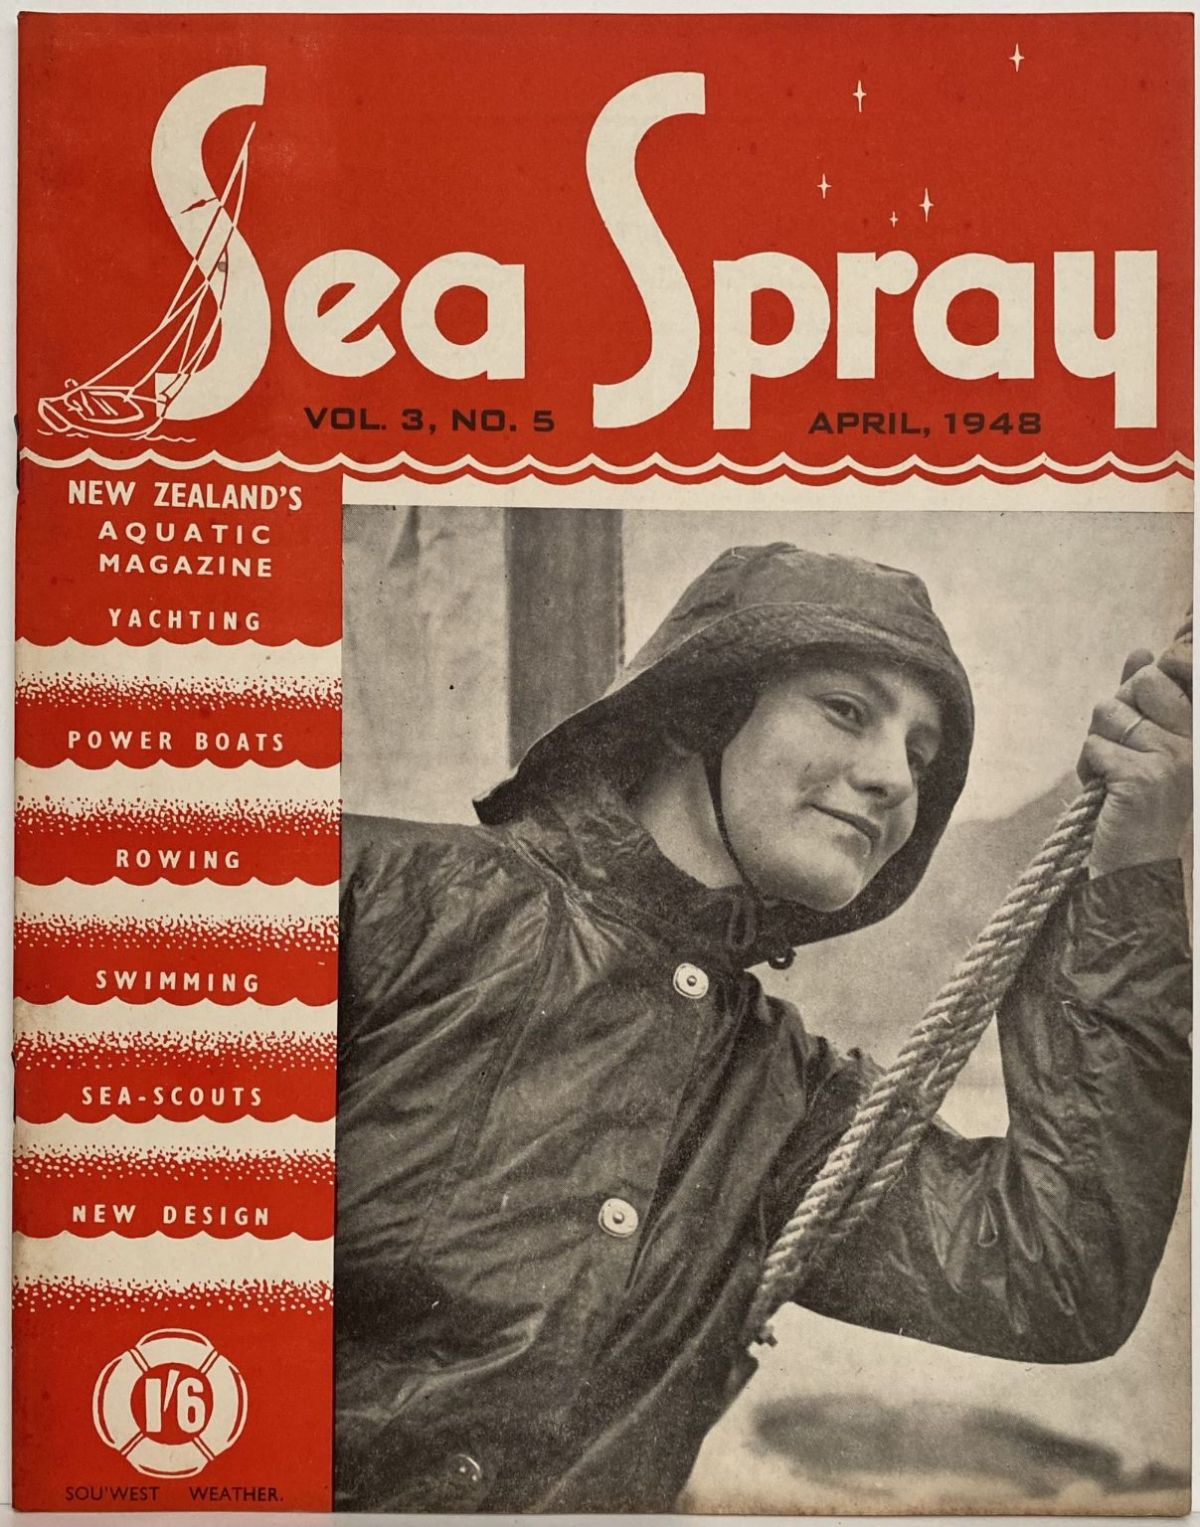 VINTAGE MAGAZINE: Sea Spray - Vol. 3, No. 5 - April 1948